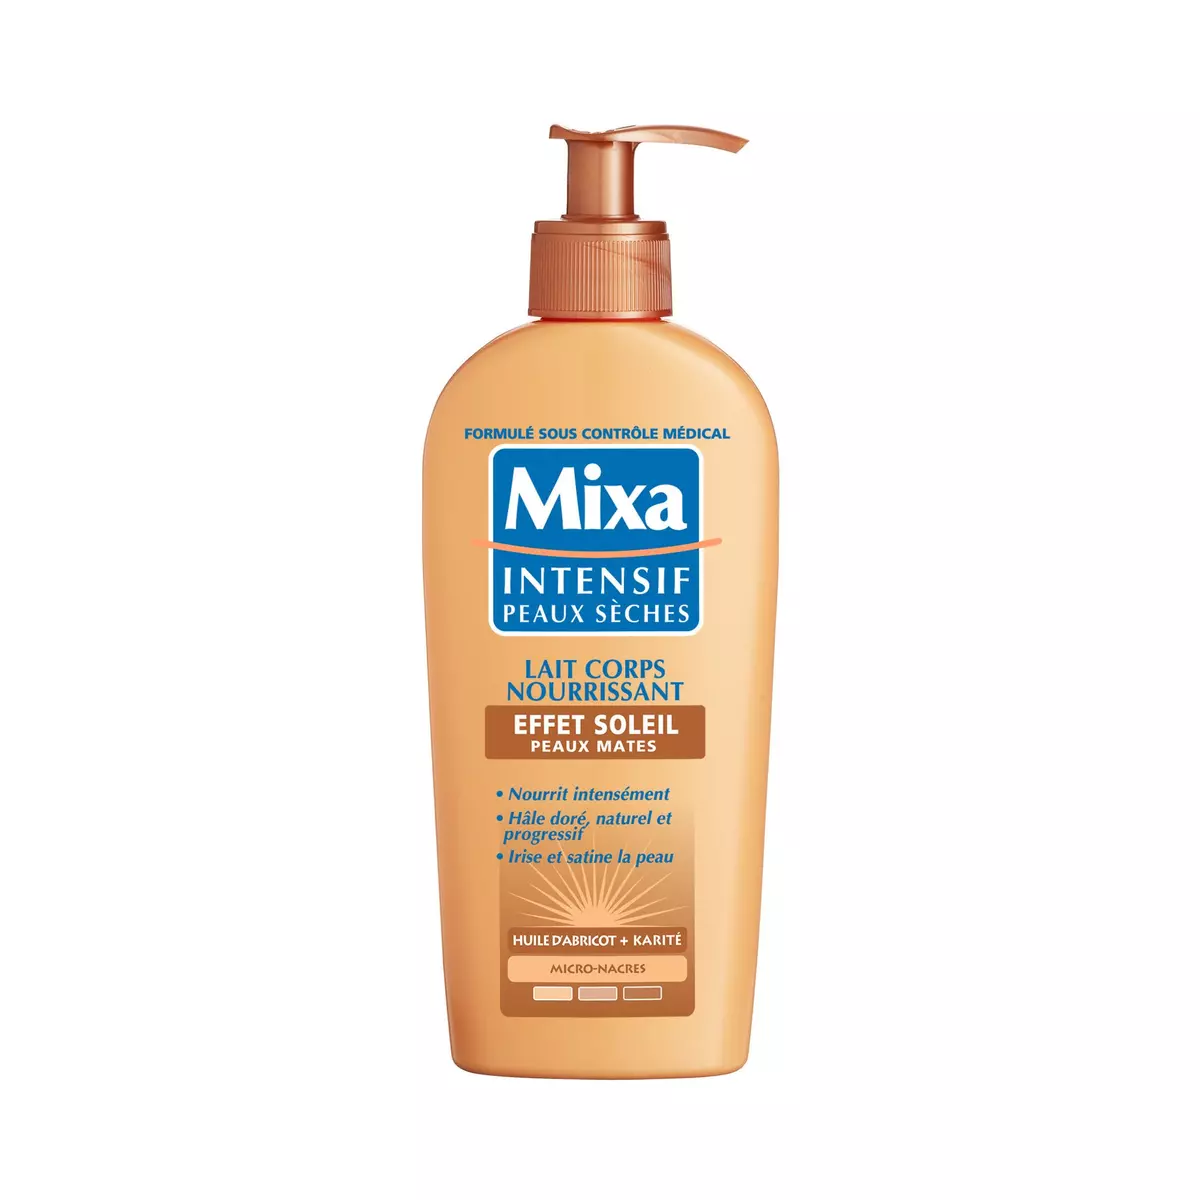 MIXA Intensif lait corps nourrissant effet soleil peaux mates à l'huile d'abricot et karité 250ml